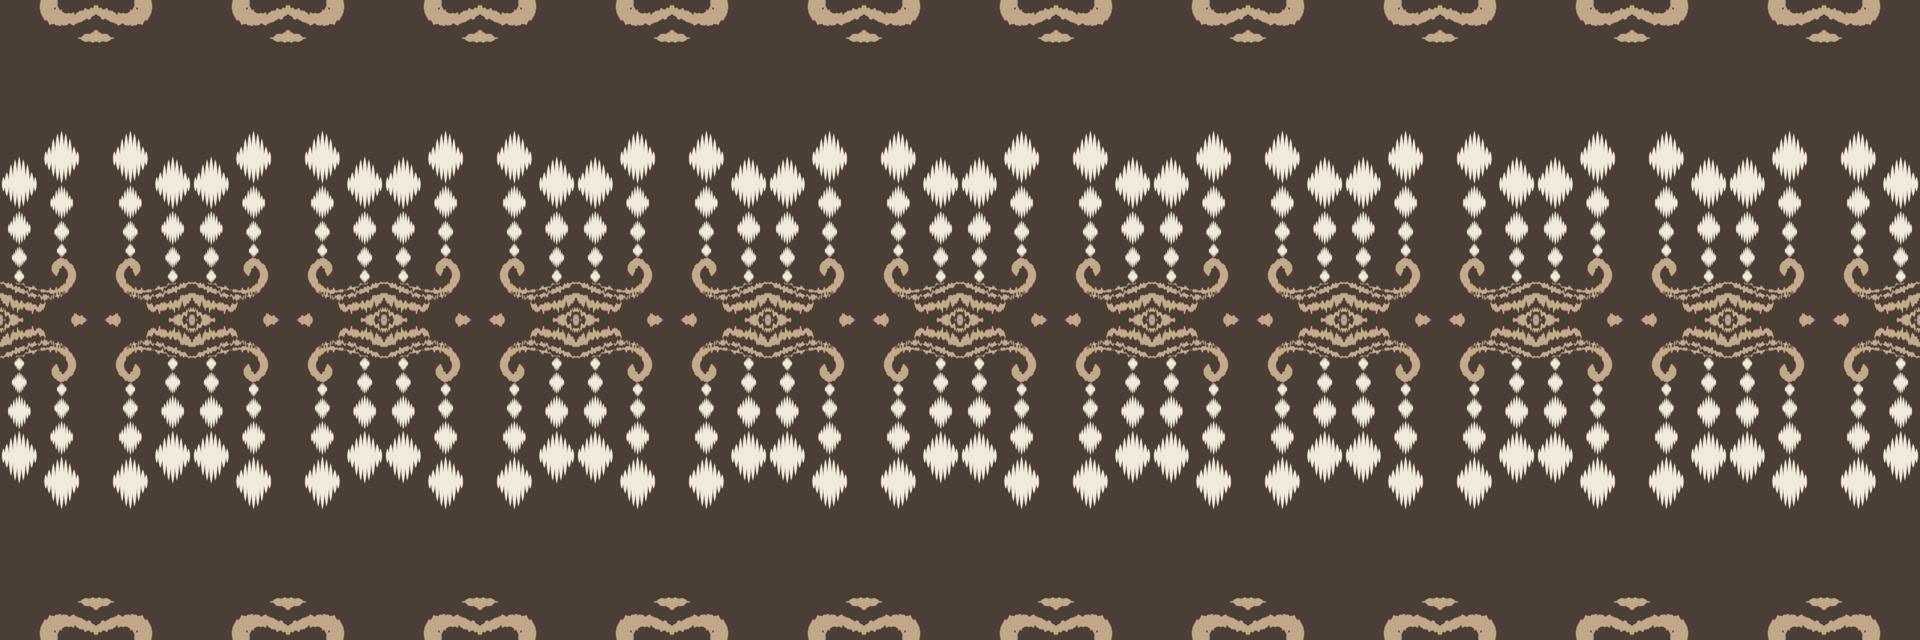 Ikat-Streifen Stammes-Kreuz nahtloses Muster. ethnische geometrische ikkat batik digitaler vektor textildesign für drucke stoff saree mughal pinsel symbol schwaden textur kurti kurtis kurtas